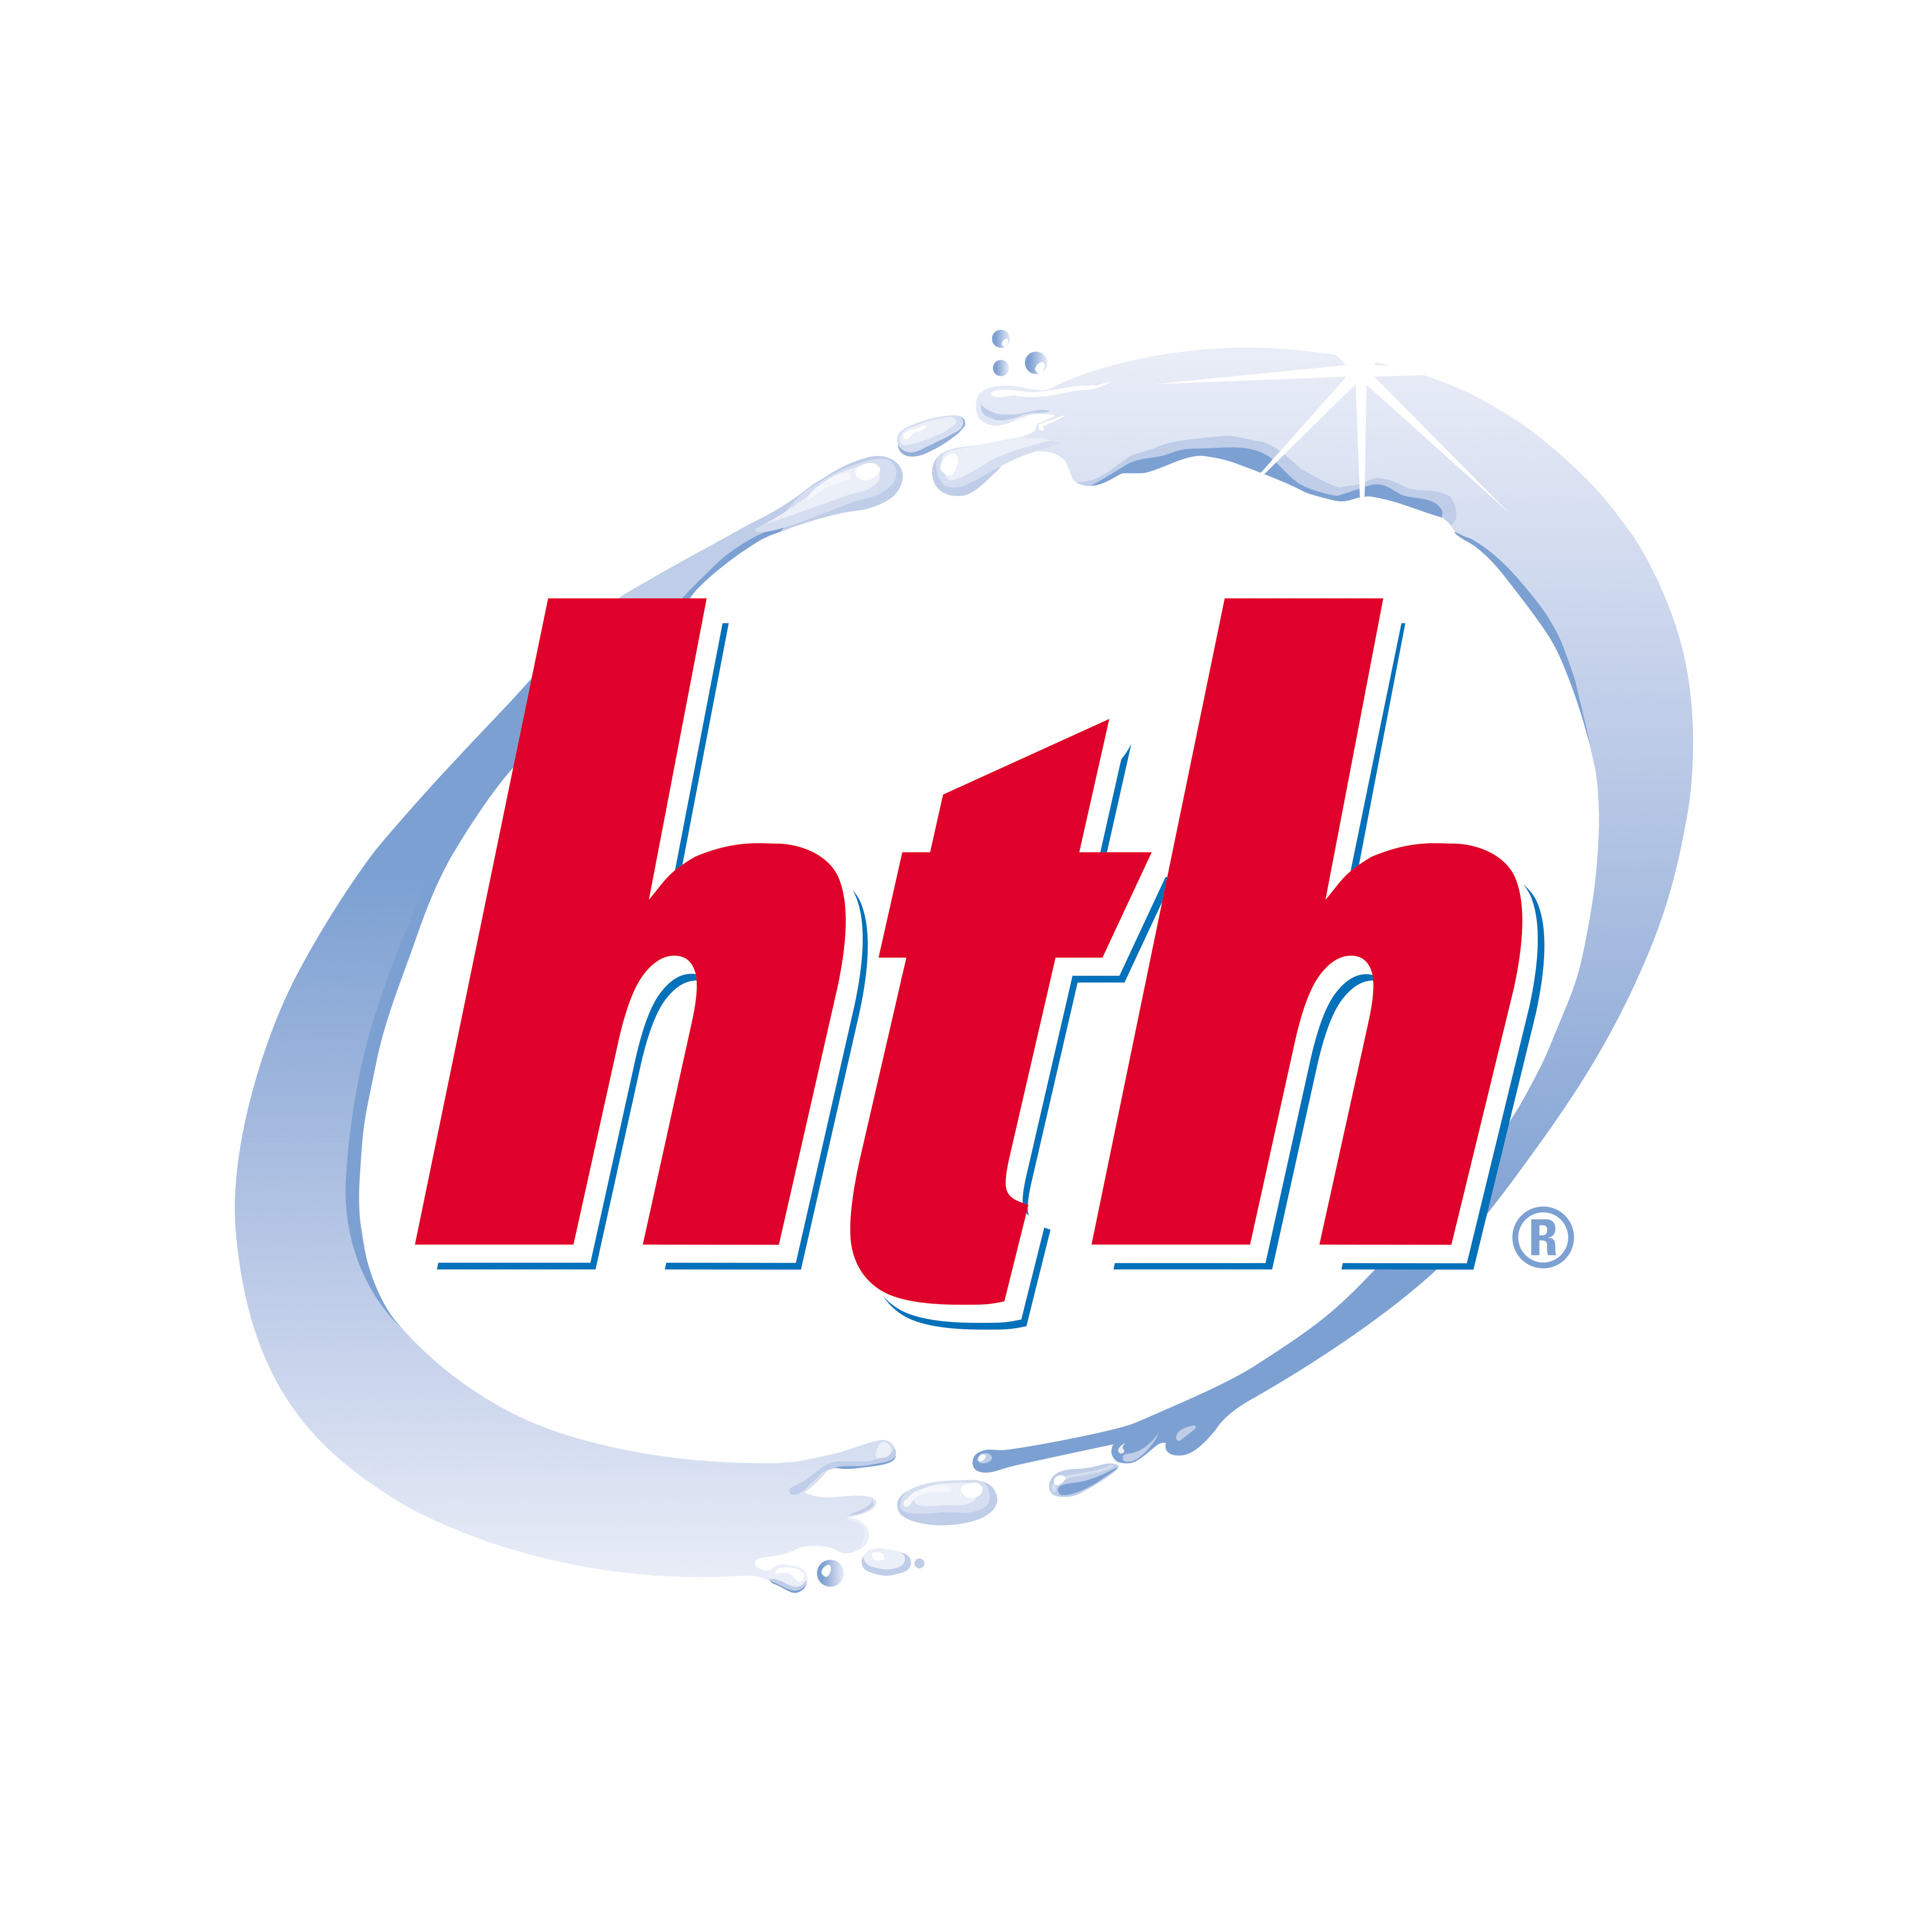 HTH